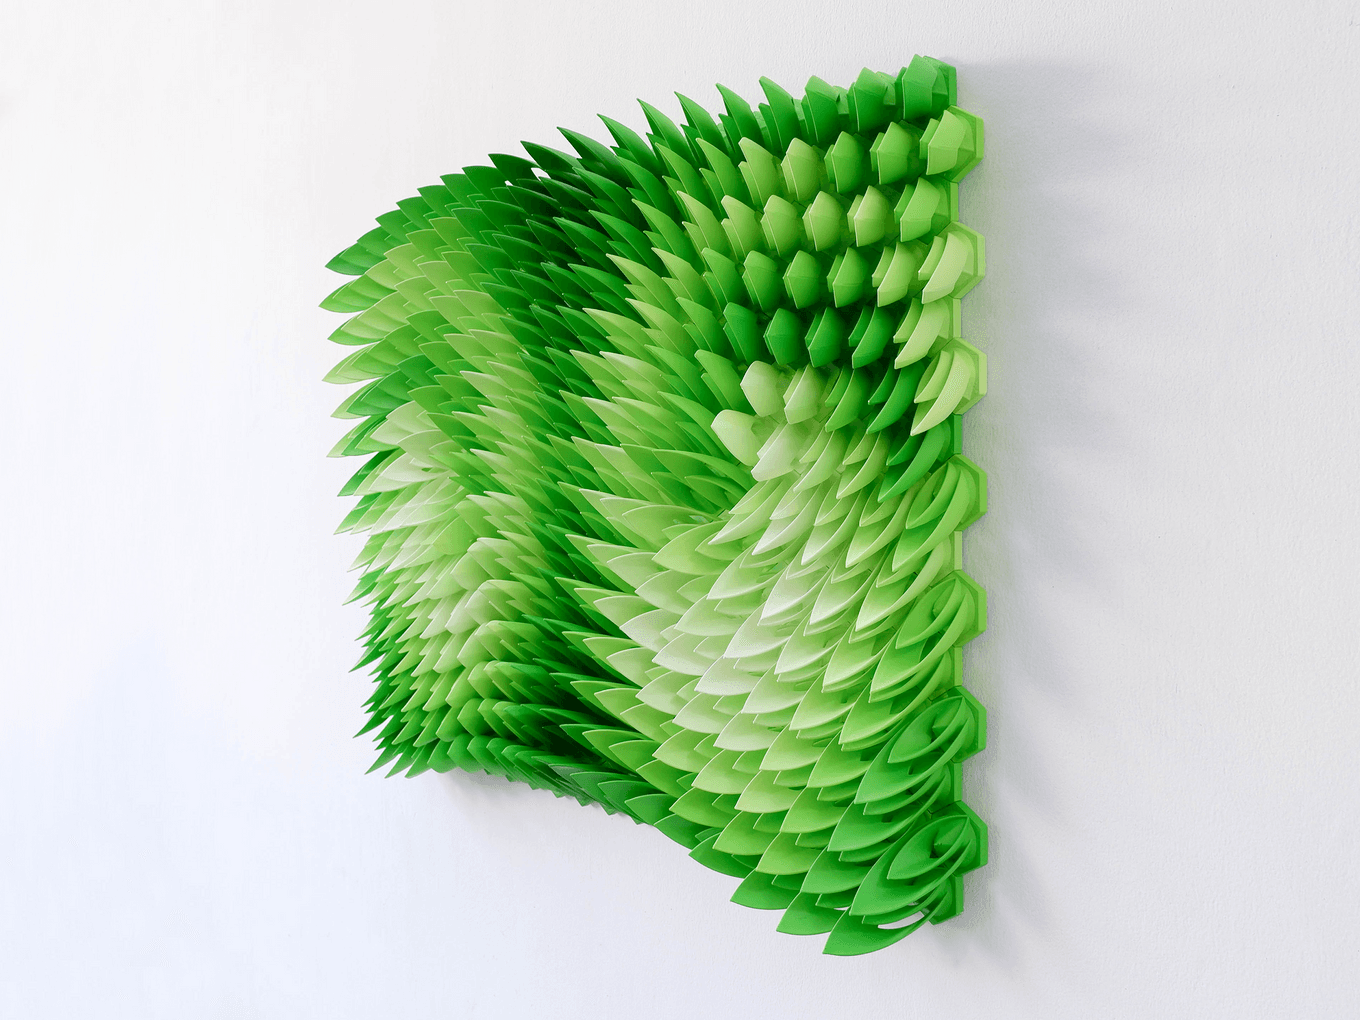 Swirling Ivy | Herschel Shapiro | Contemporary Wall Sculpture